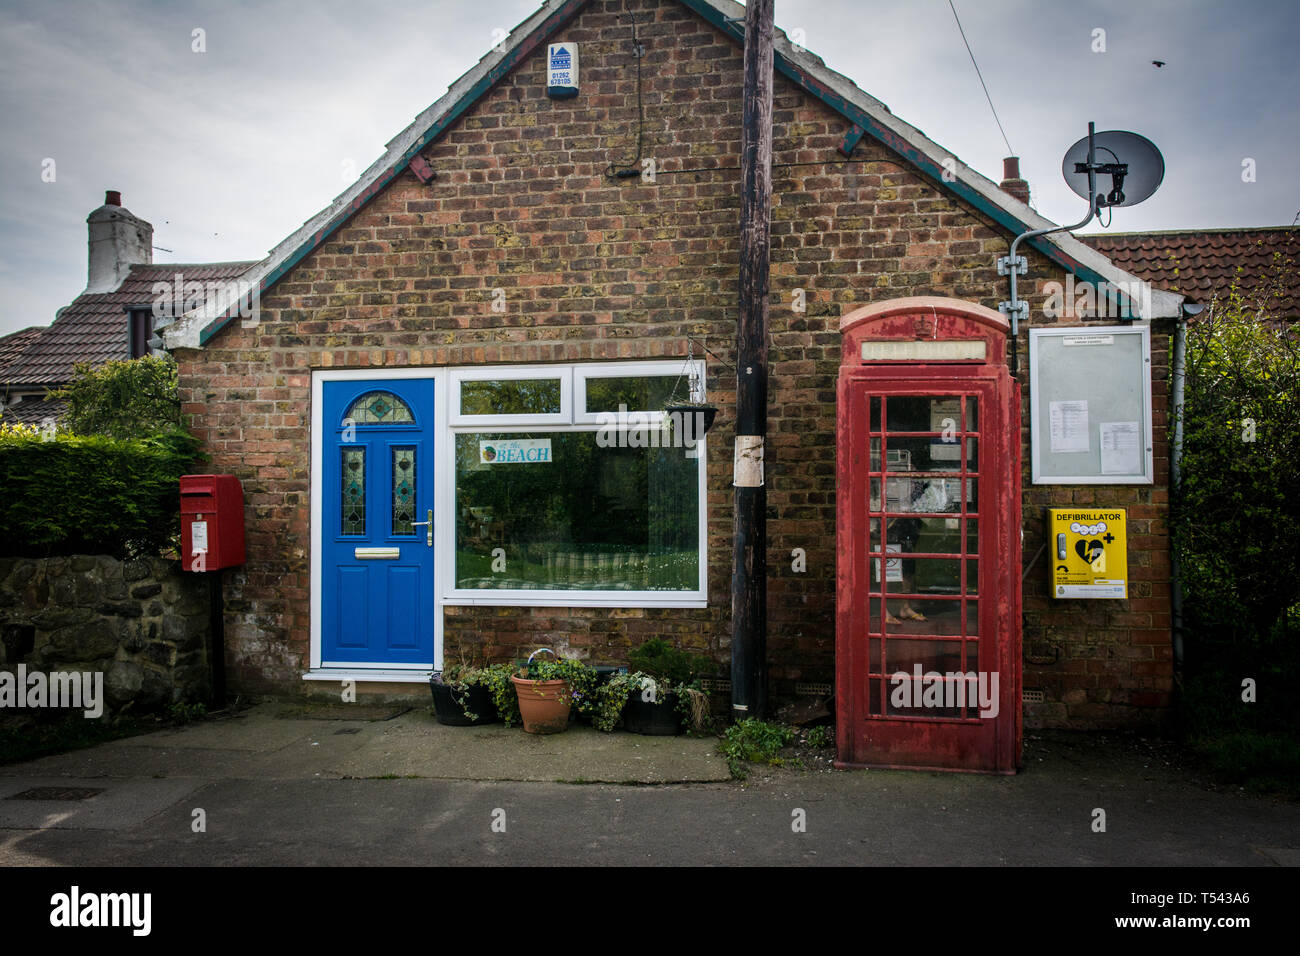 Anciens et nouveaux. Vous pouvez voir l'ancienne cabine téléphonique et post box contre le nouveau défibrillateur et boutique moderne dans un village du Yorkshire, UK. Banque D'Images